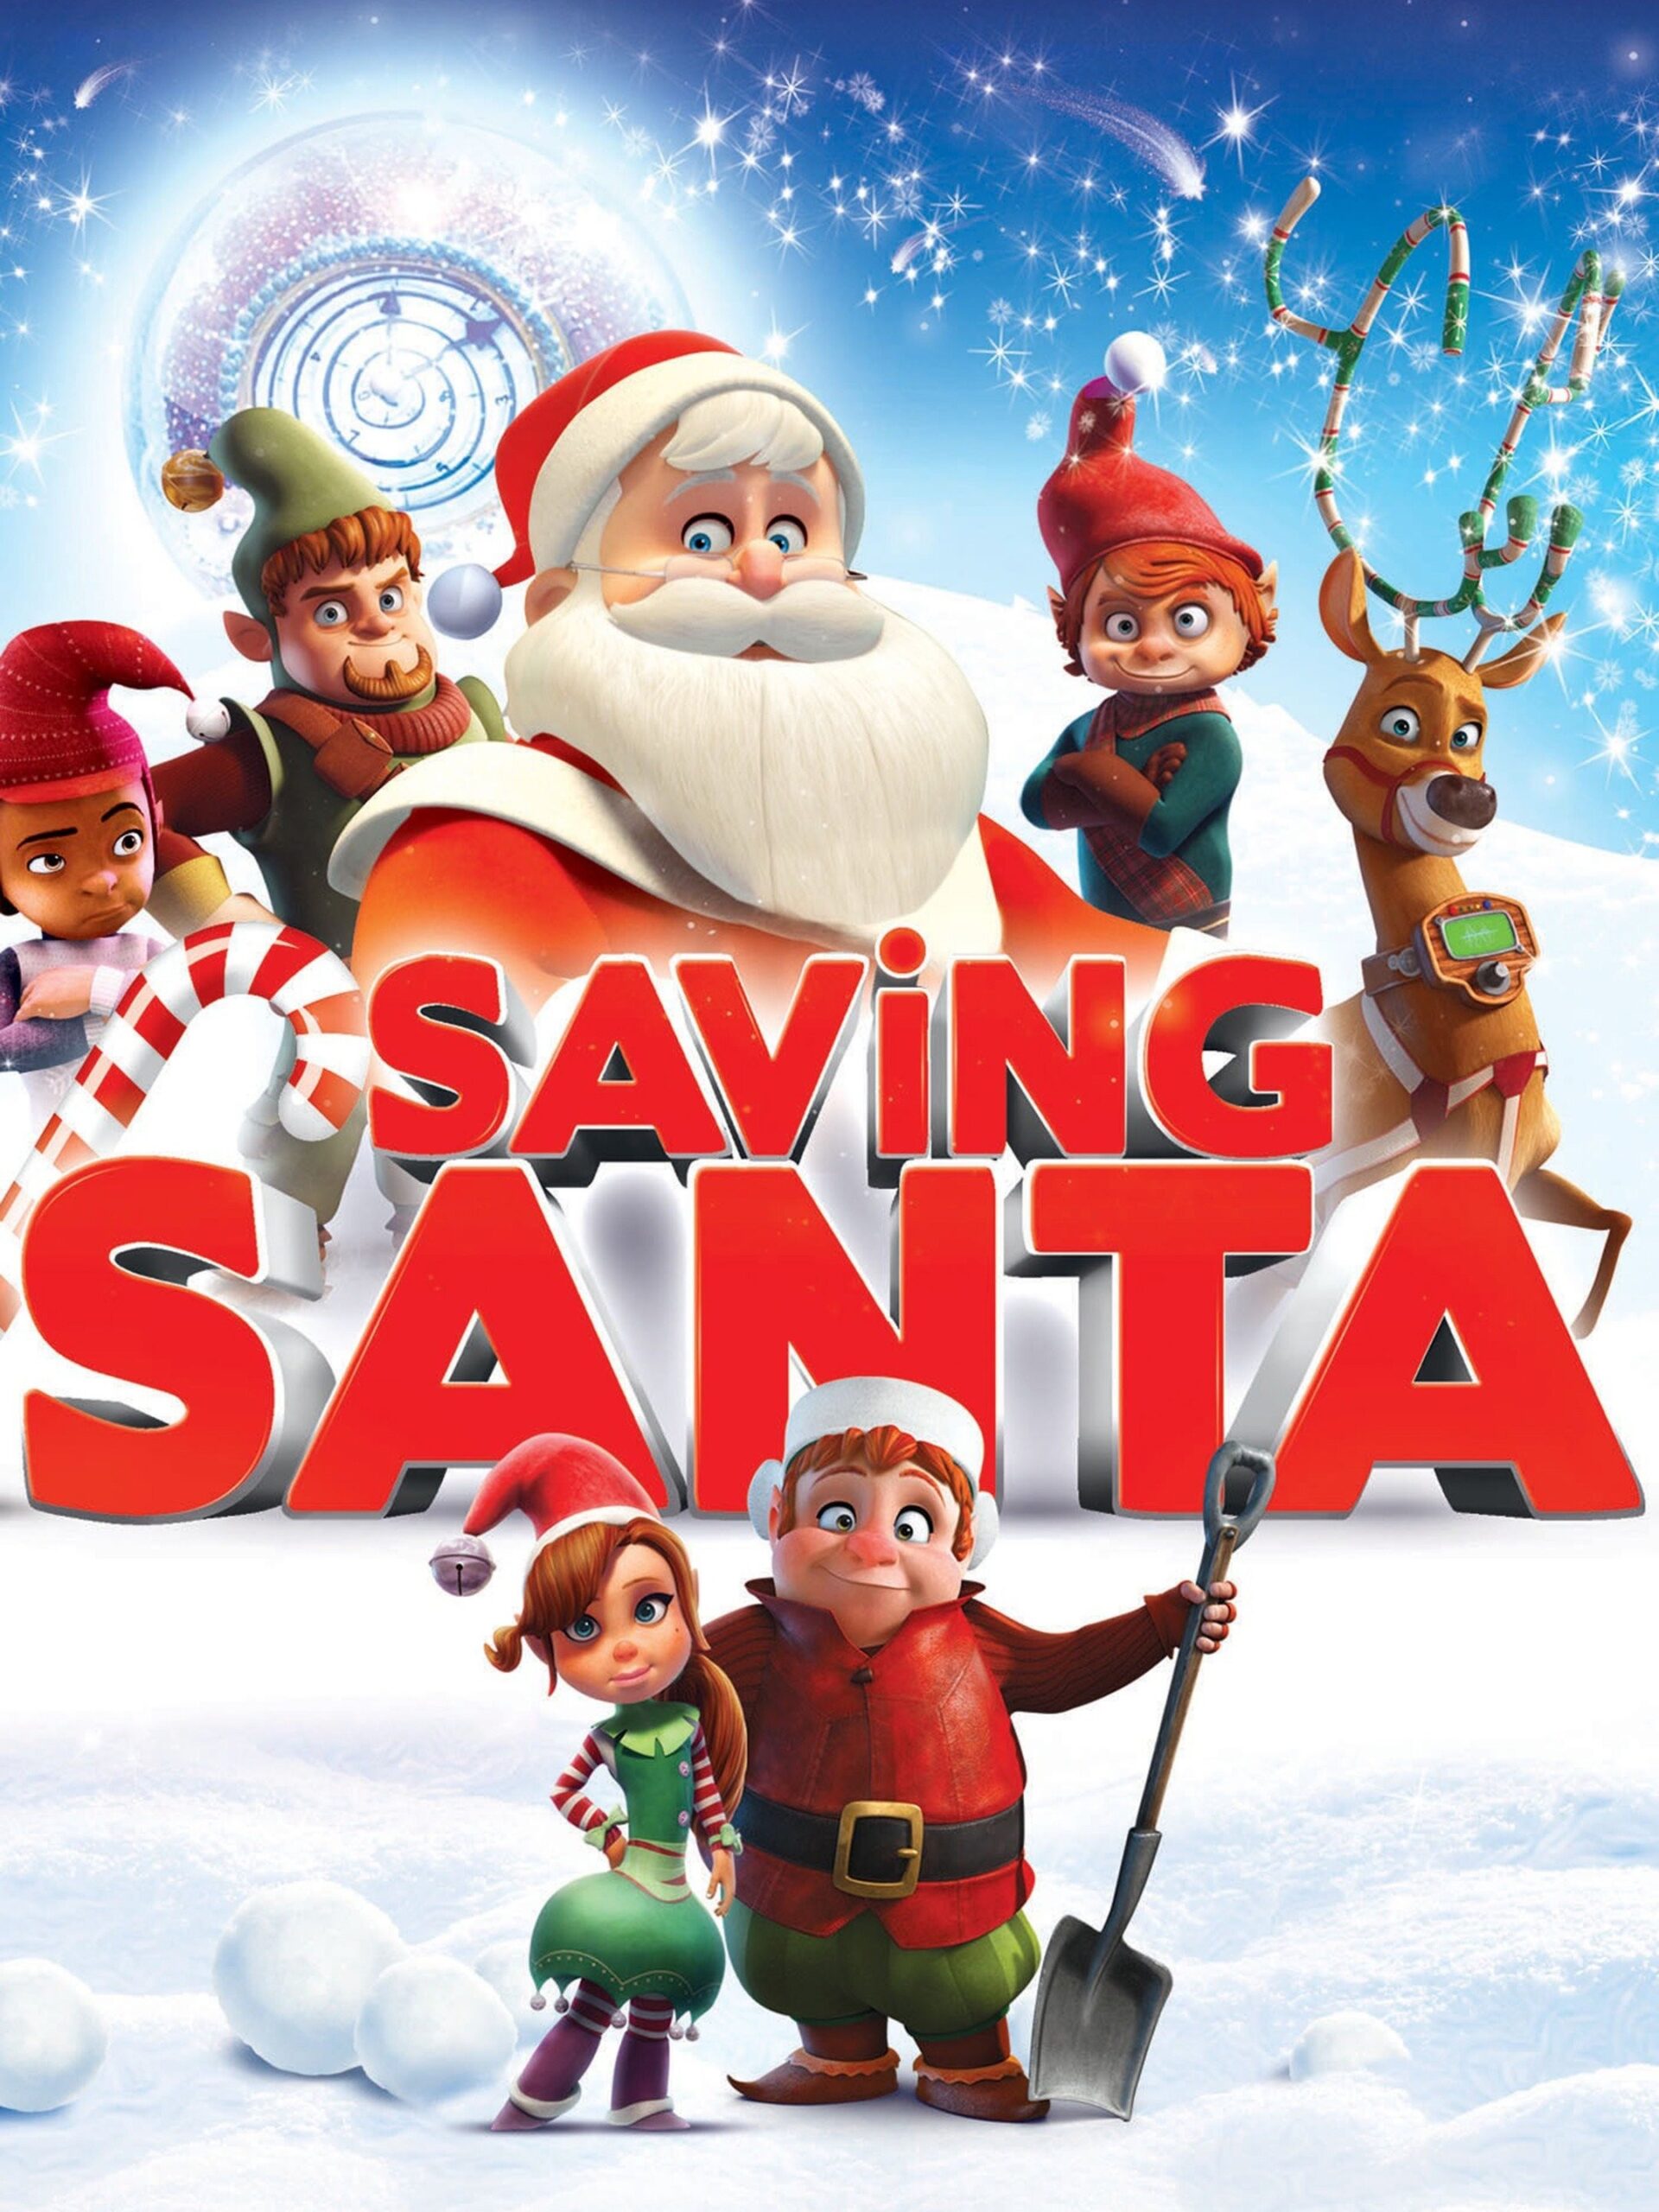 Saving Santa ขบวนการภูติจิ๋ว พิทักษ์ซานตาครอส 2013